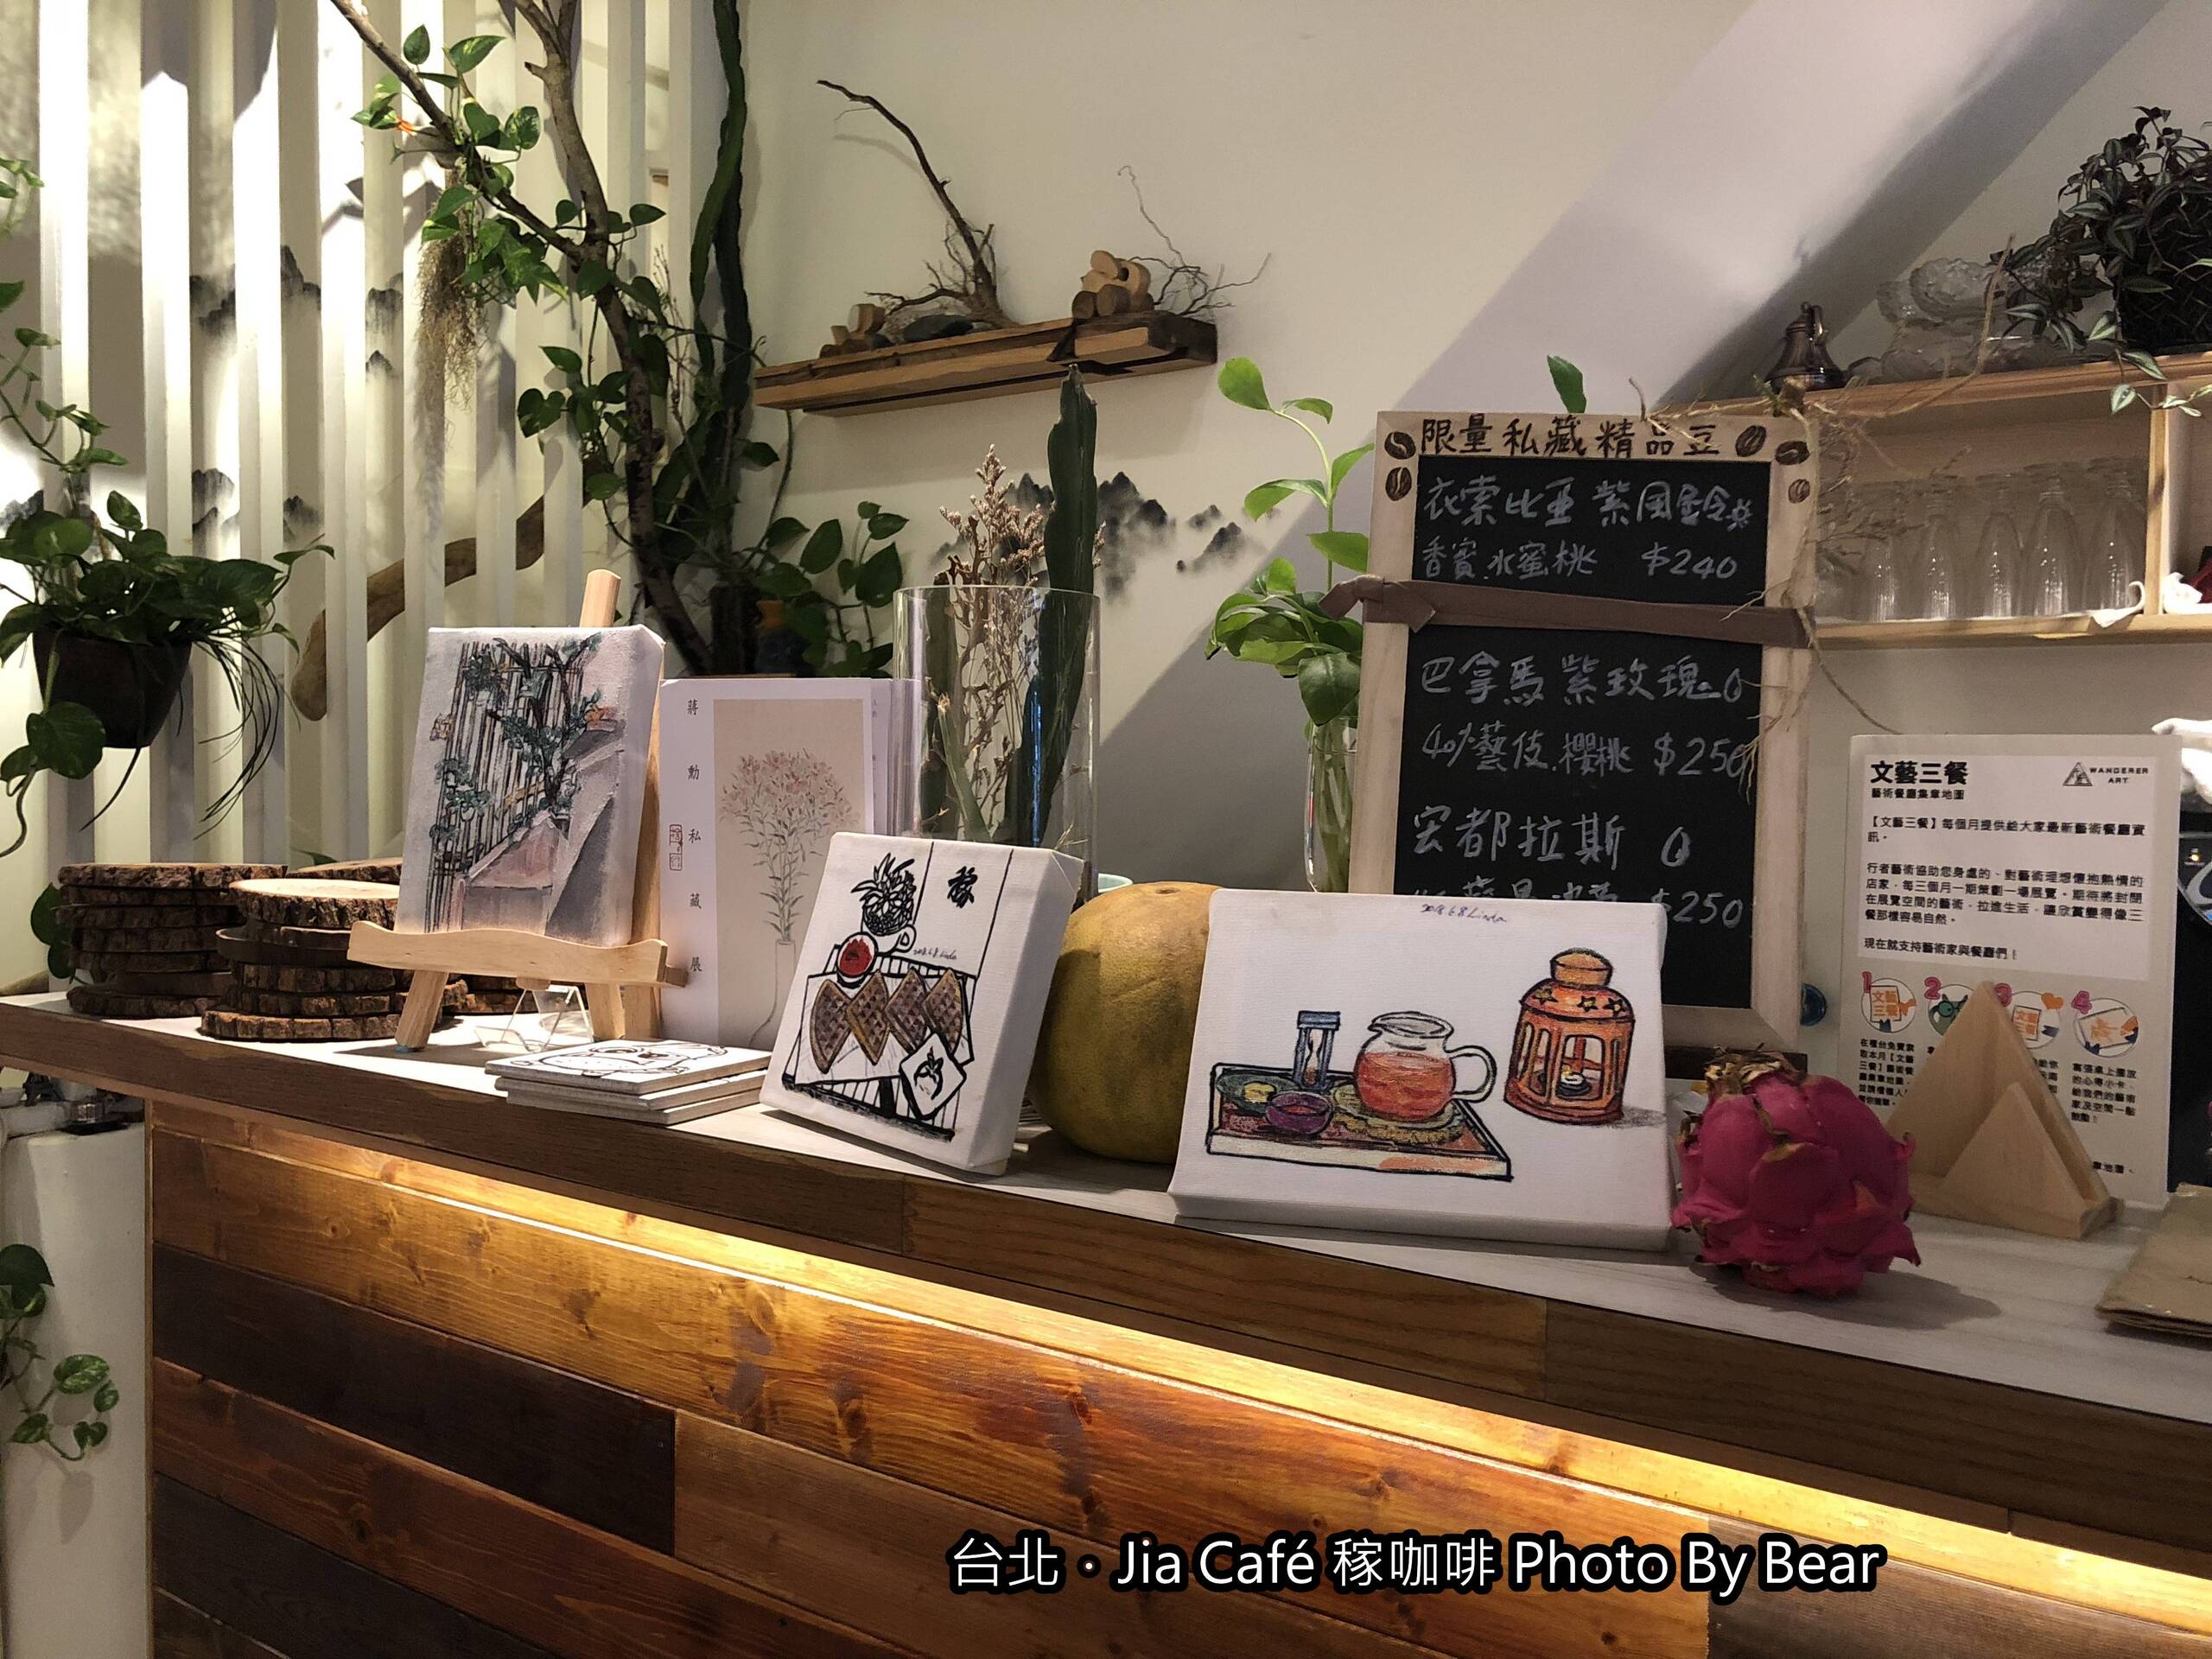 【板橋】「藝文與綠意的結合．Jia Cafe稼咖啡(老宅/木造空間/藝文展覽/植栽/手沖咖啡/雪藏蛋糕/近板橋體育場)」